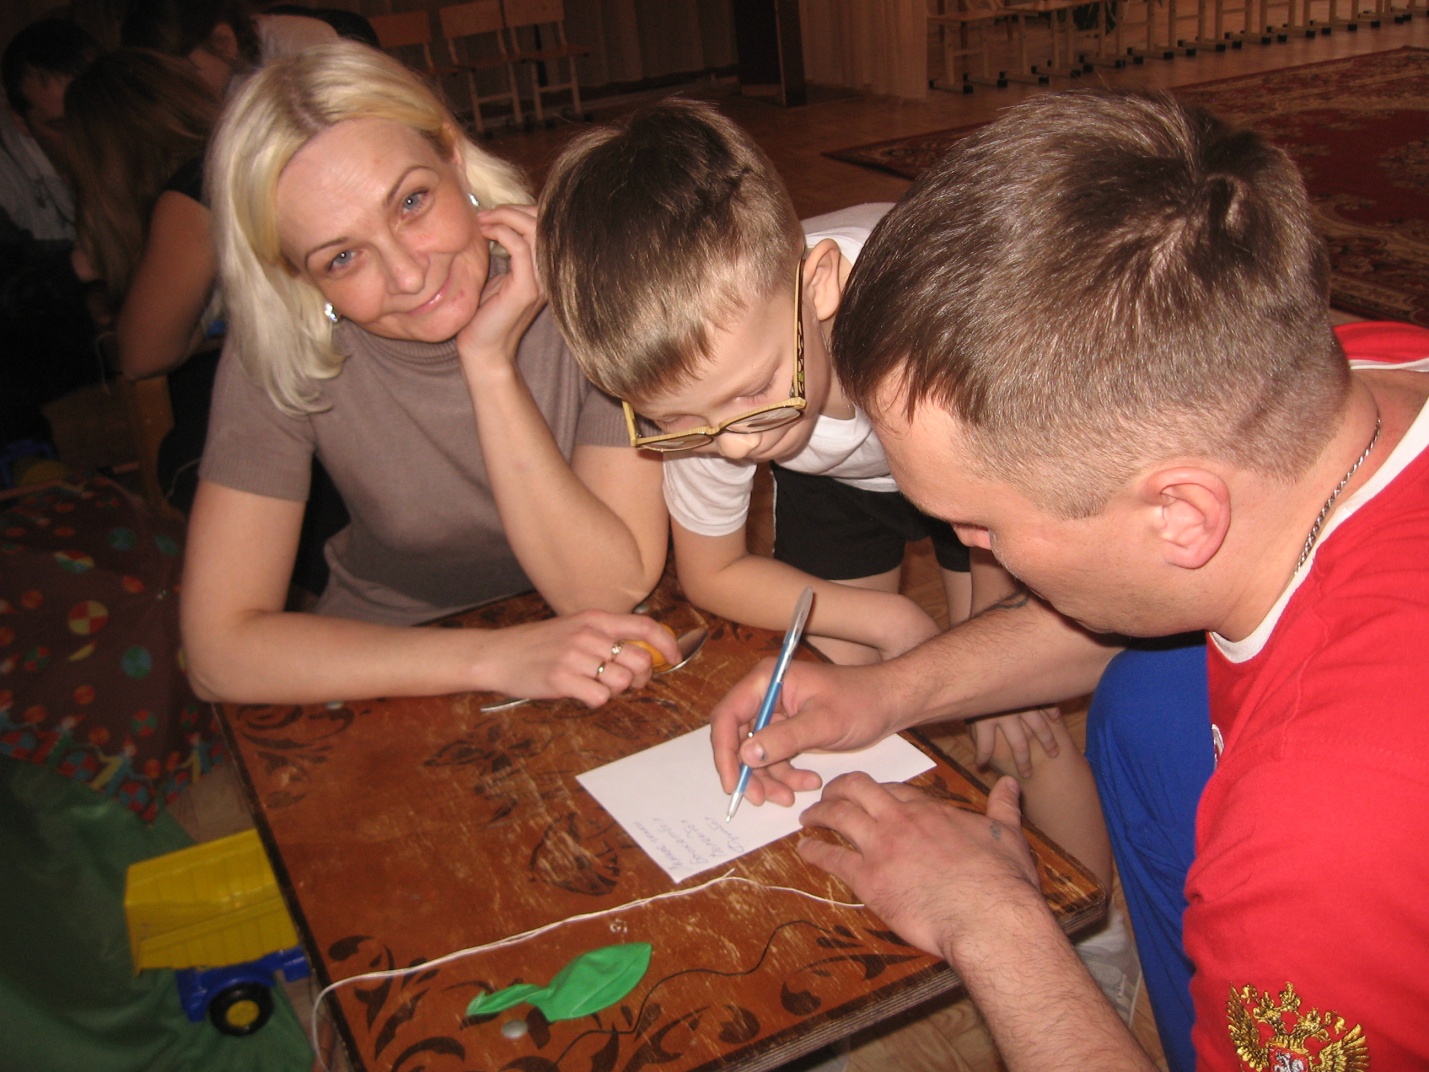 Спортивный праздник с родителями Заинск – малая Родина моей семьи (спортивный праздник для старшей группы).